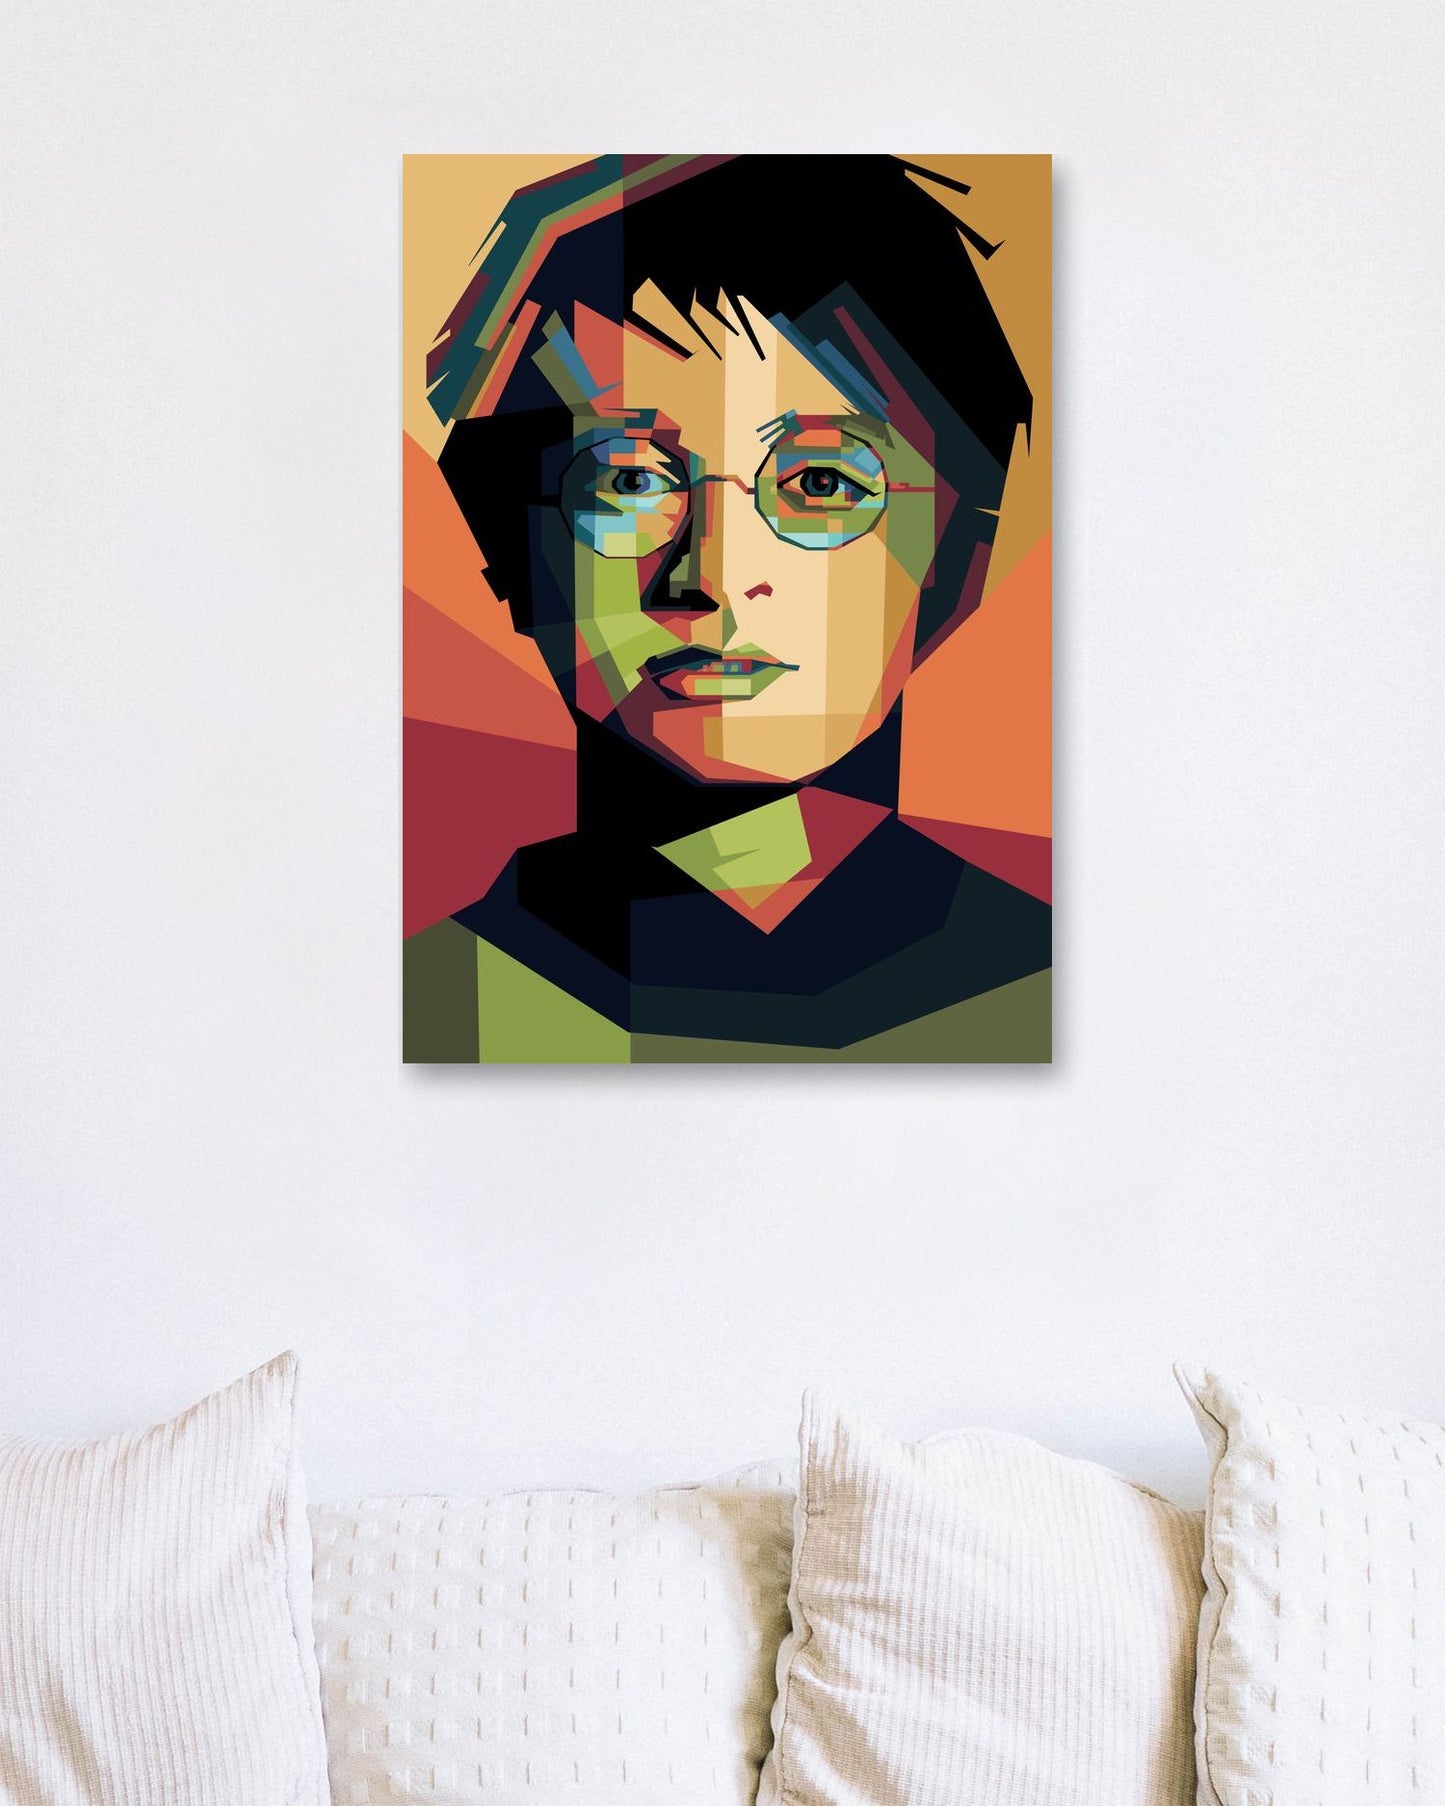 Harry Potter pop art - @ADart